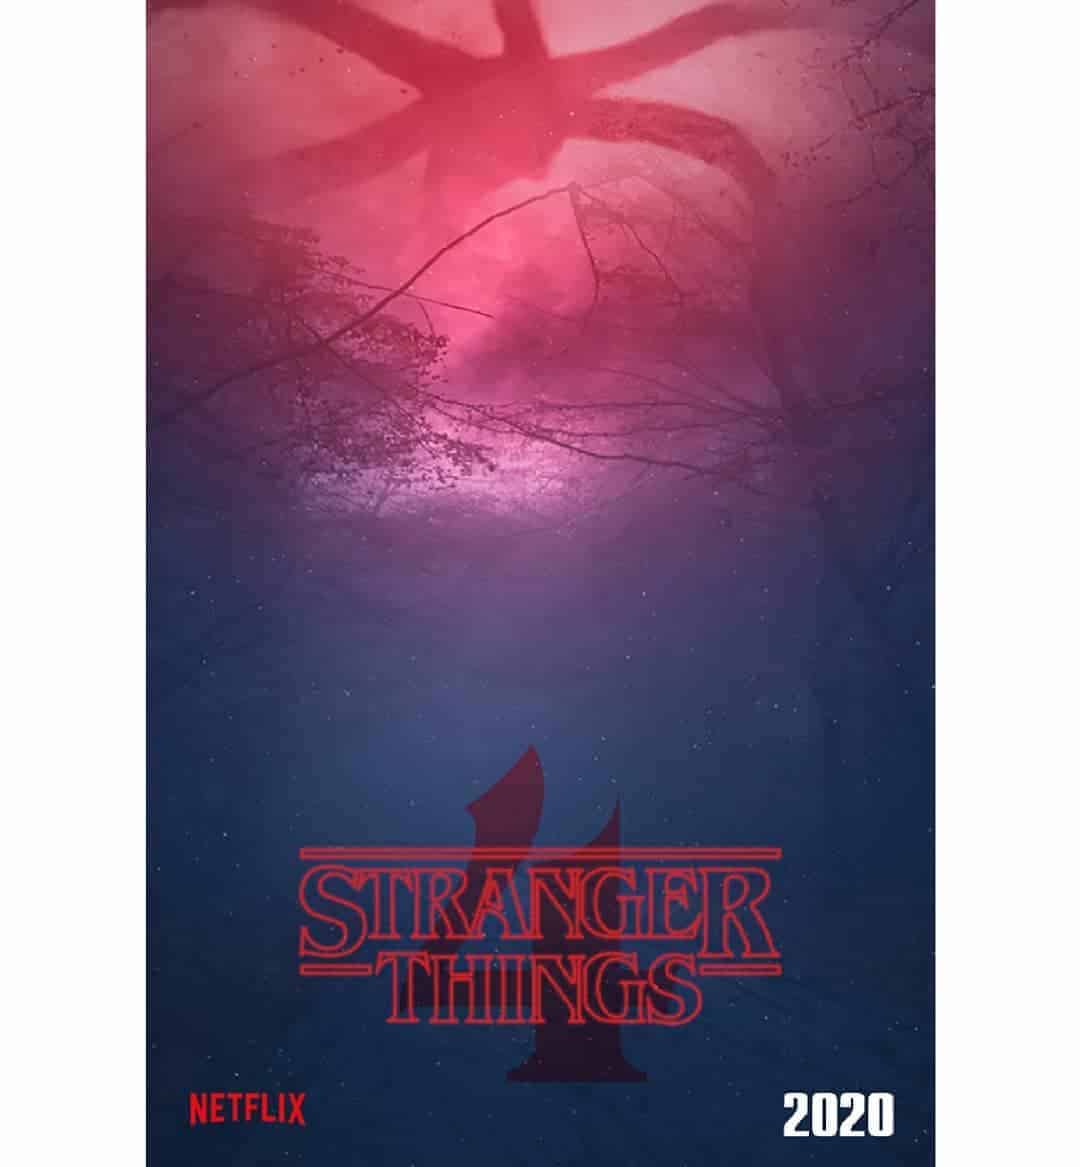 Stranger Things Season 4 's poster